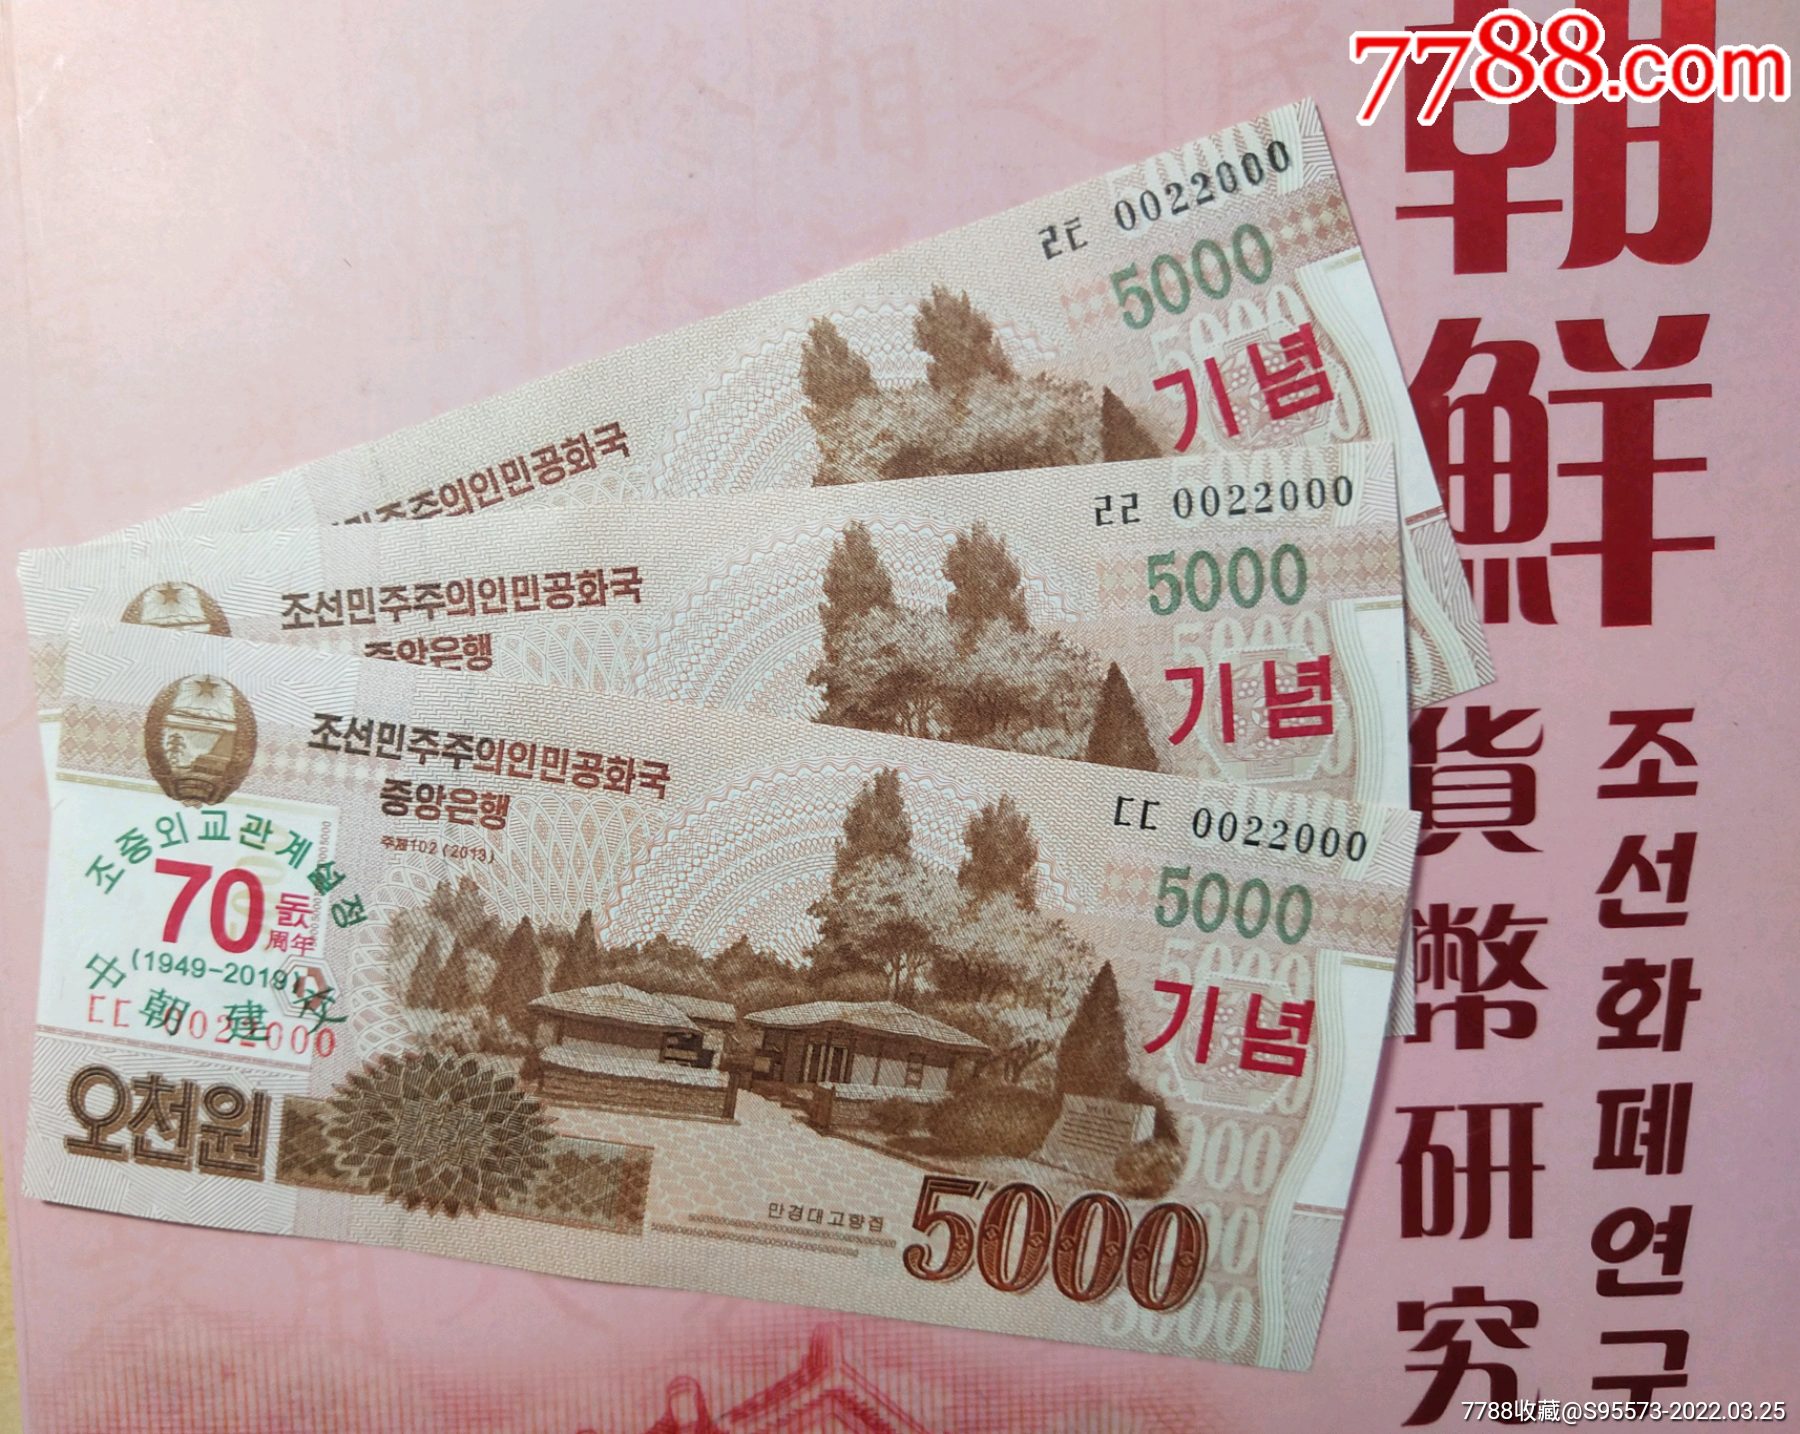 中国朝鲜建交70周年纪念钞全同豹子号三张,2019年5000元,全新